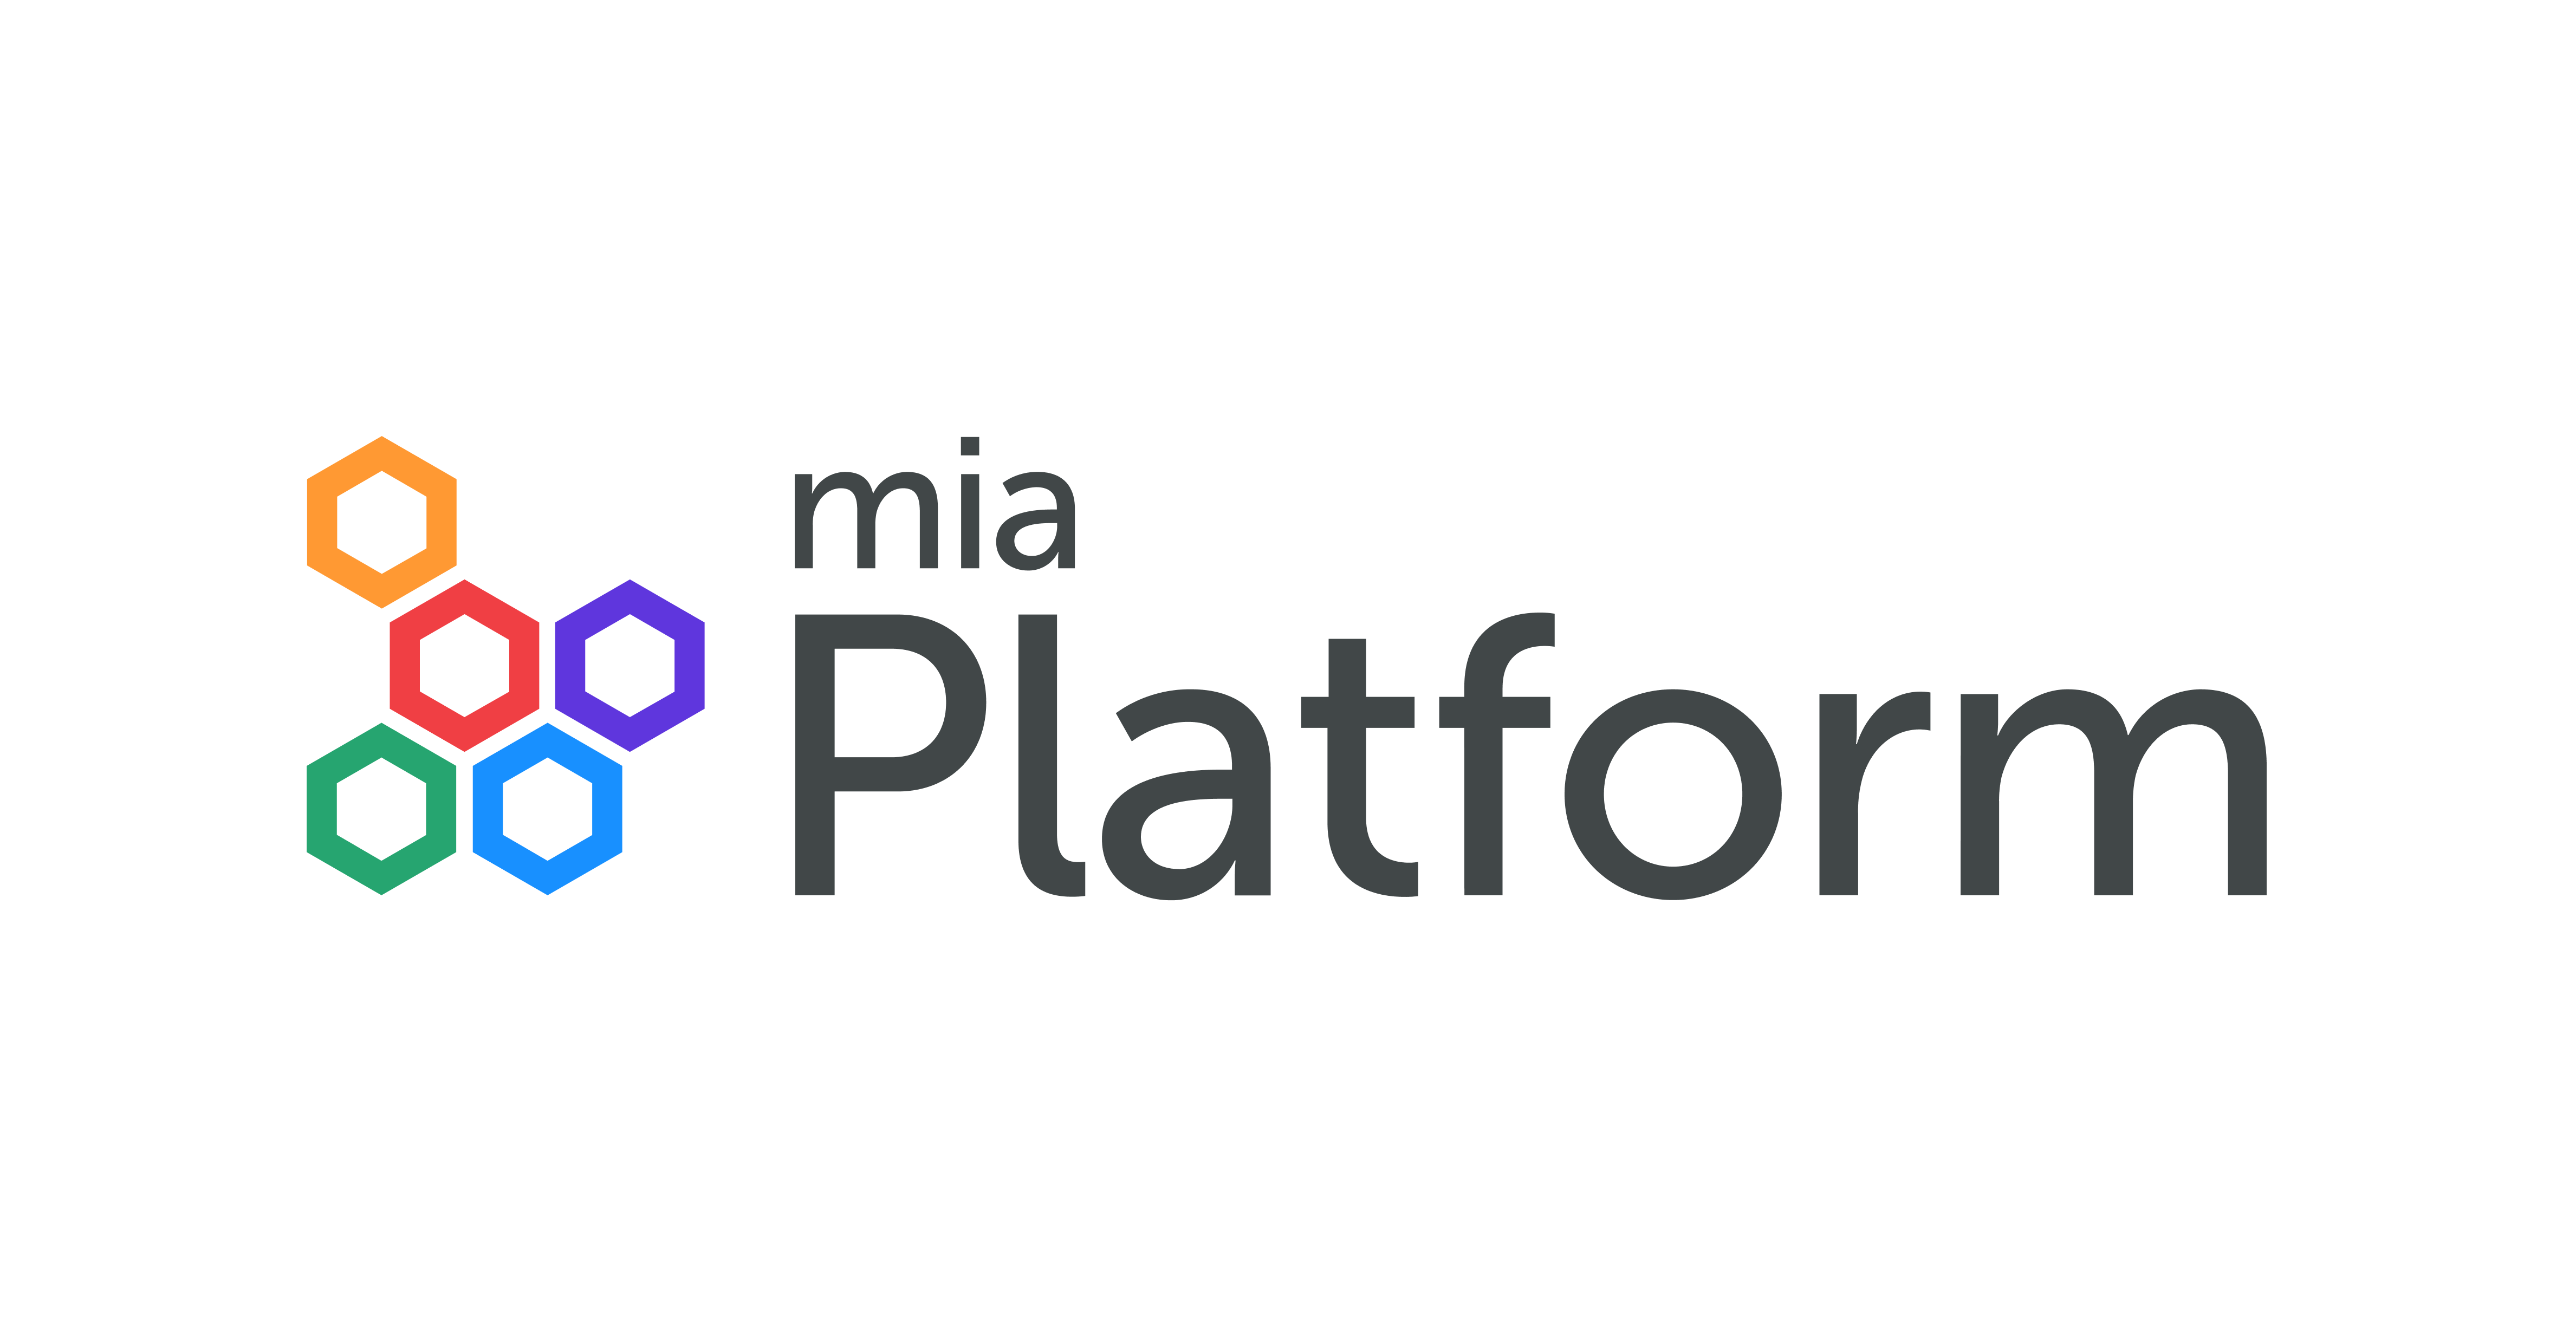 Mia Platform logo